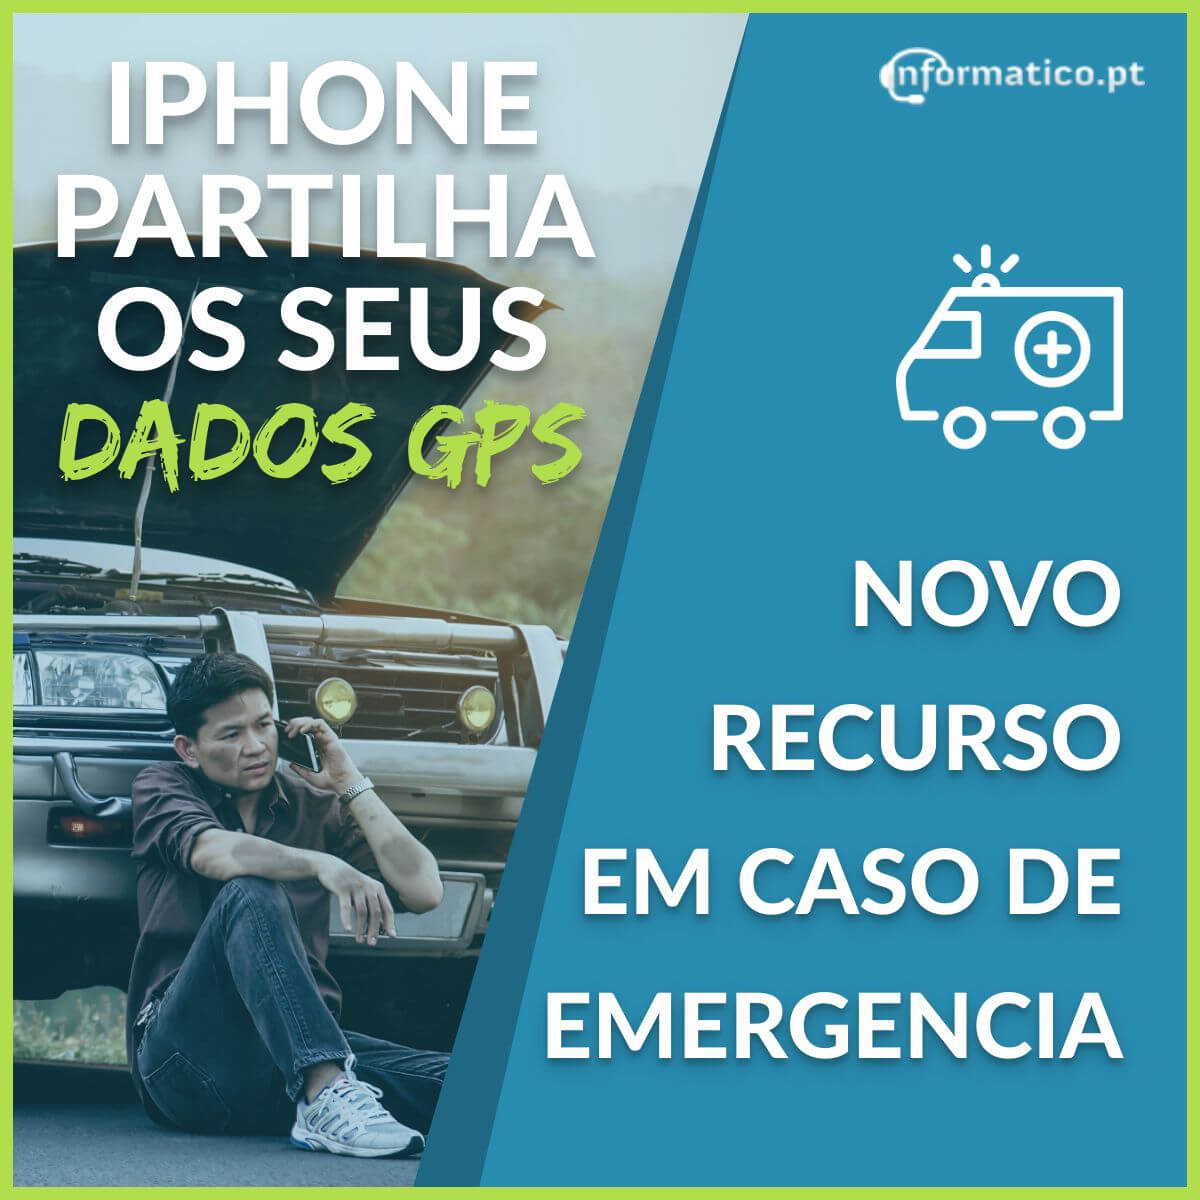 iPhone partilha localização com serviços emergência